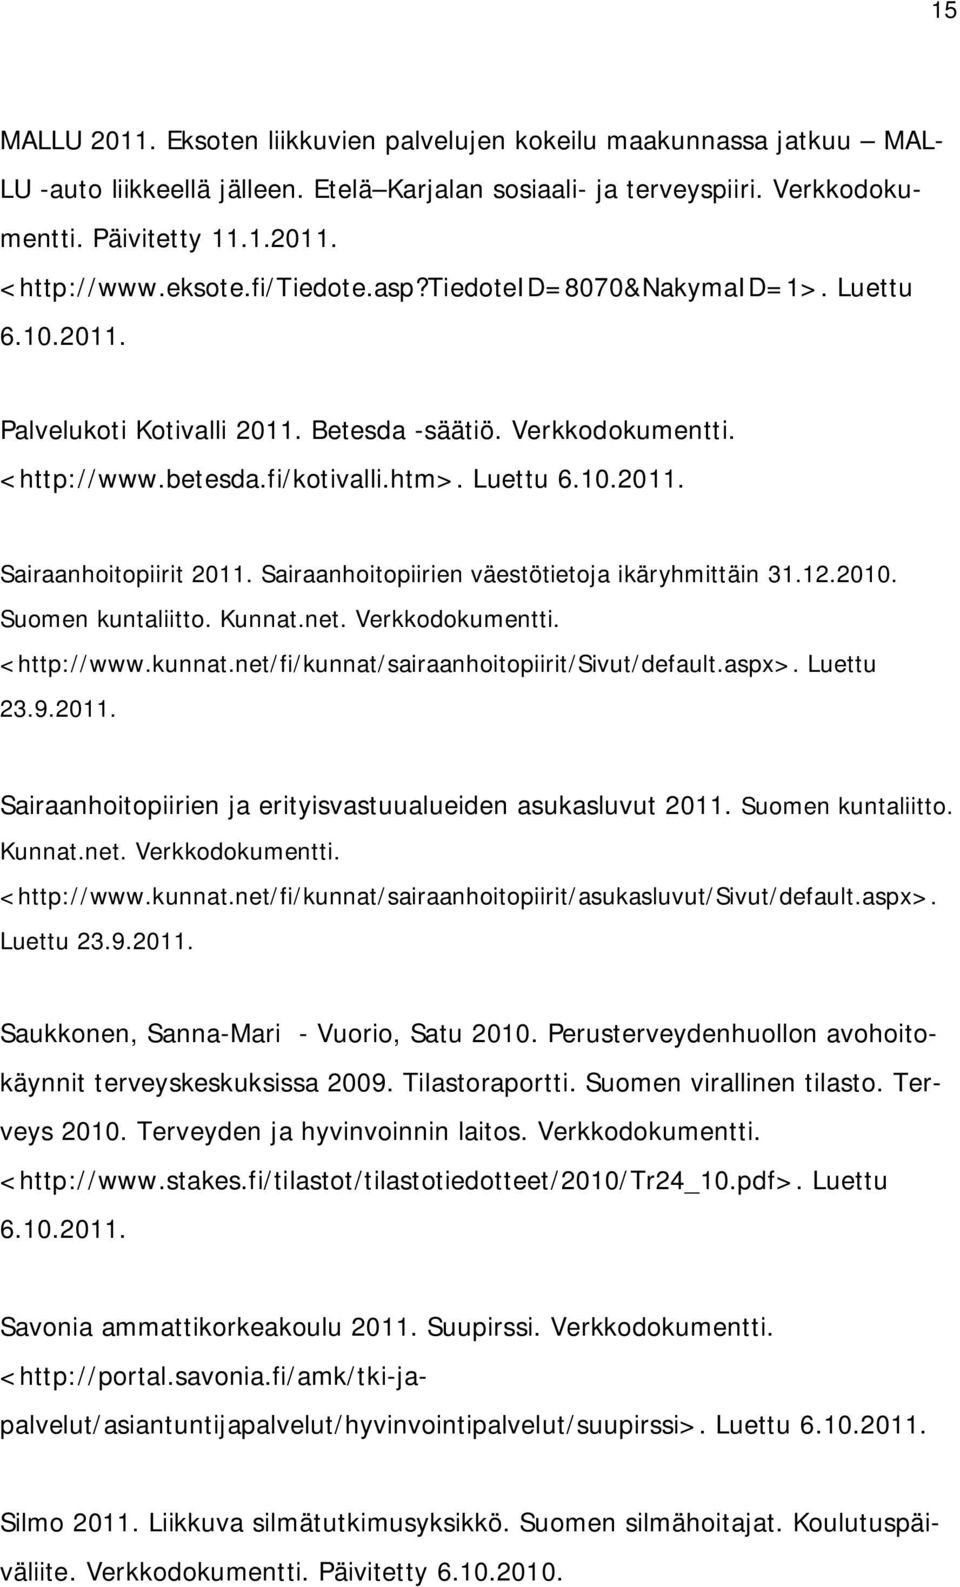 Sairaanhoitopiirien väestötietoja ikäryhmittäin 31.12.2010. Suomen kuntaliitto. Kunnat.net. Verkkodokumentti. <http://www.kunnat.net/fi/kunnat/sairaanhoitopiirit/sivut/default.aspx>. Luettu 23.9.2011.